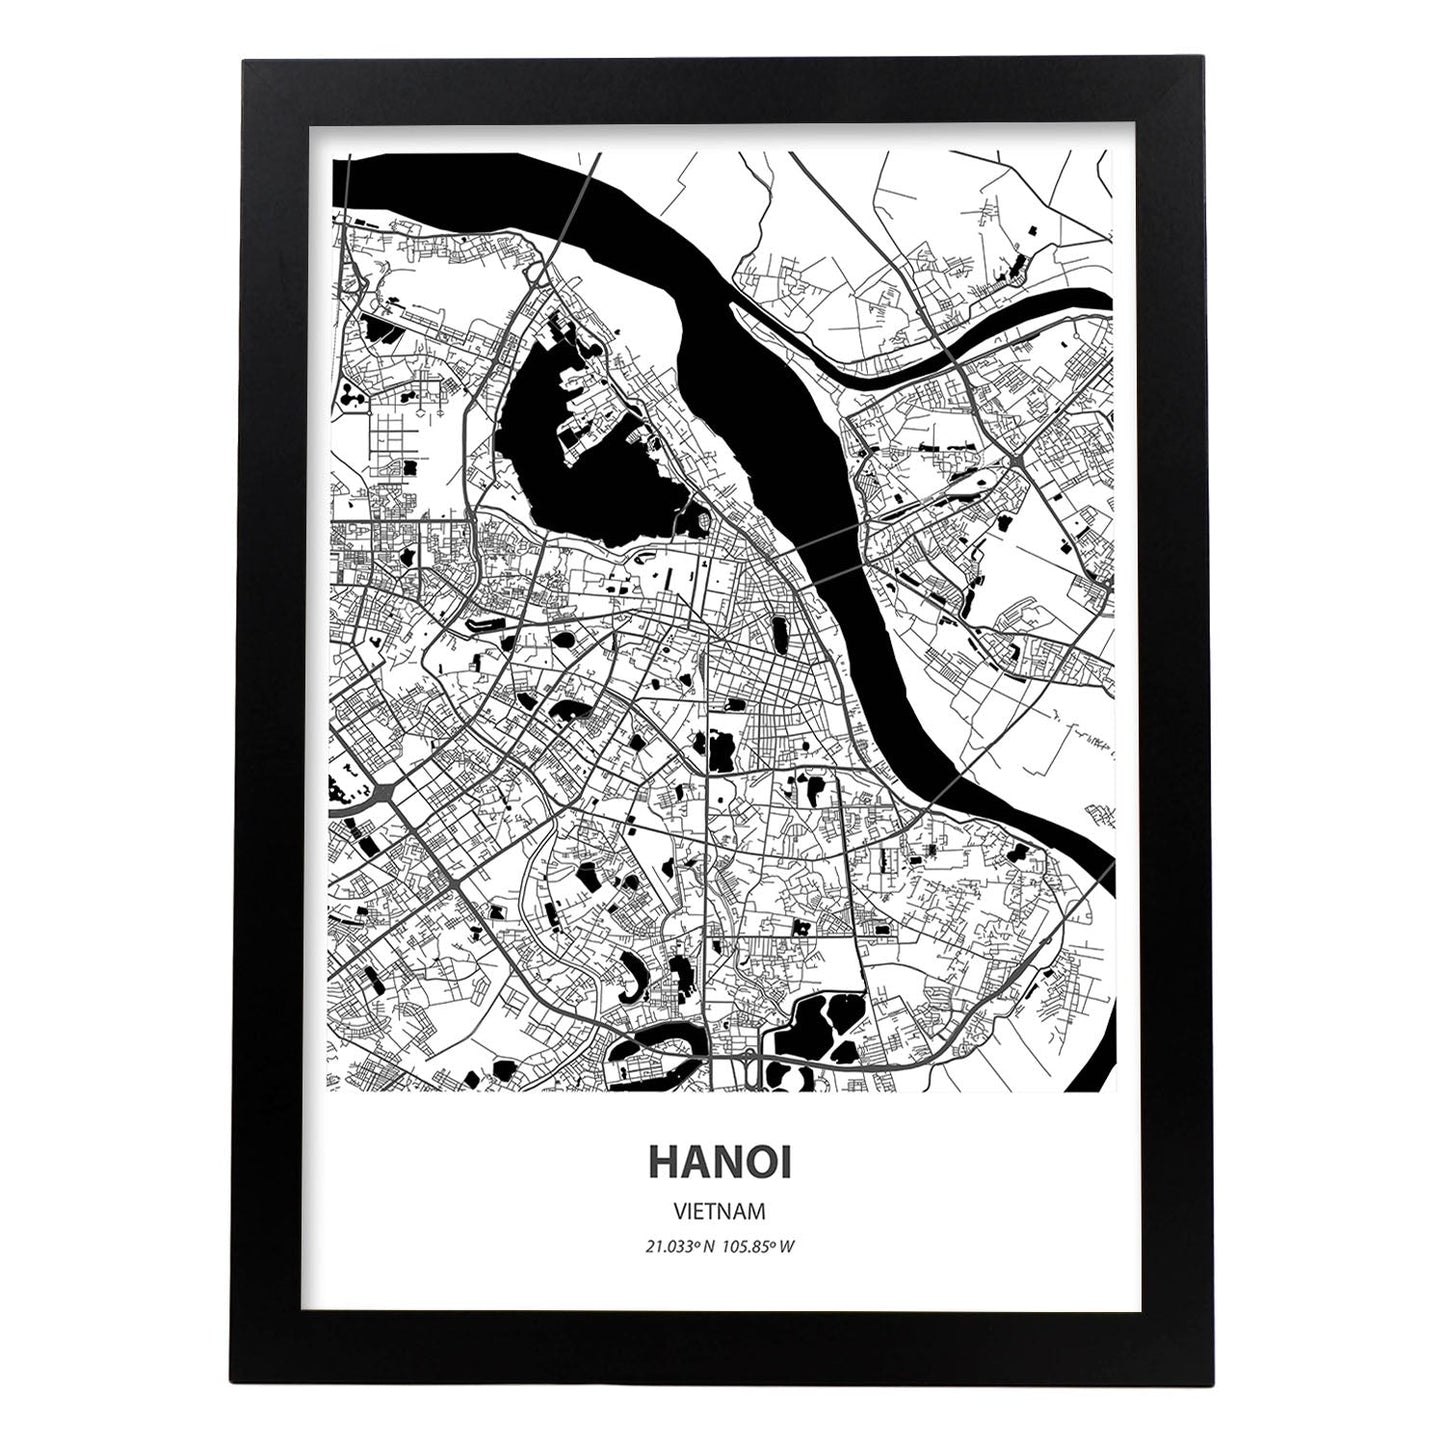 Poster con mapa de Hanoi - Vietnam. Láminas de ciudades de Asia con mares y ríos en color negro.-Artwork-Nacnic-A3-Marco Negro-Nacnic Estudio SL